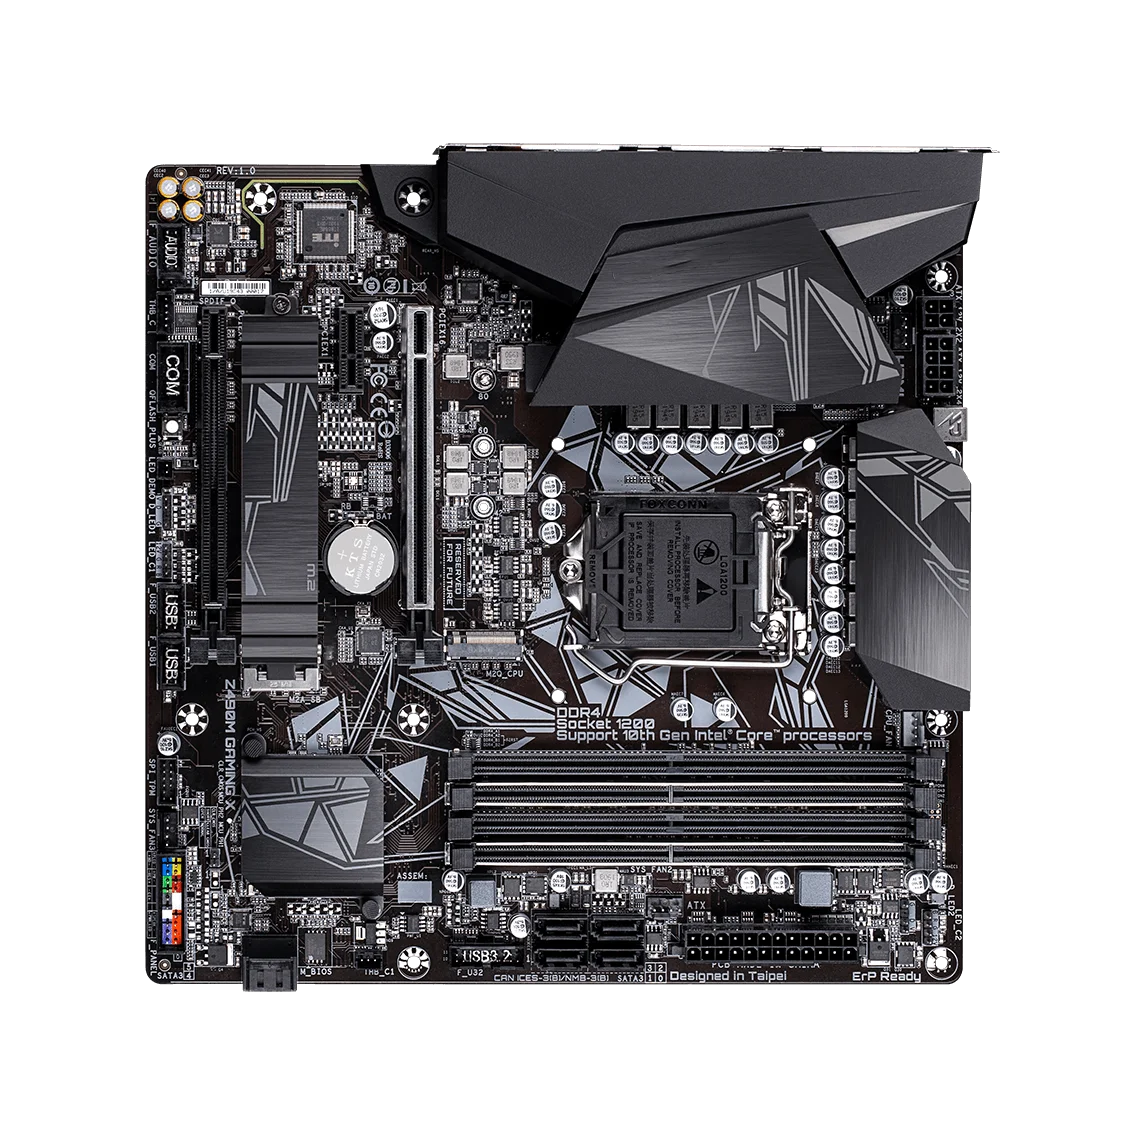 

buy Motherboard antcase s19 Z490m motherboard processor kit 4 ddr4 motherboard price 128 GB z490